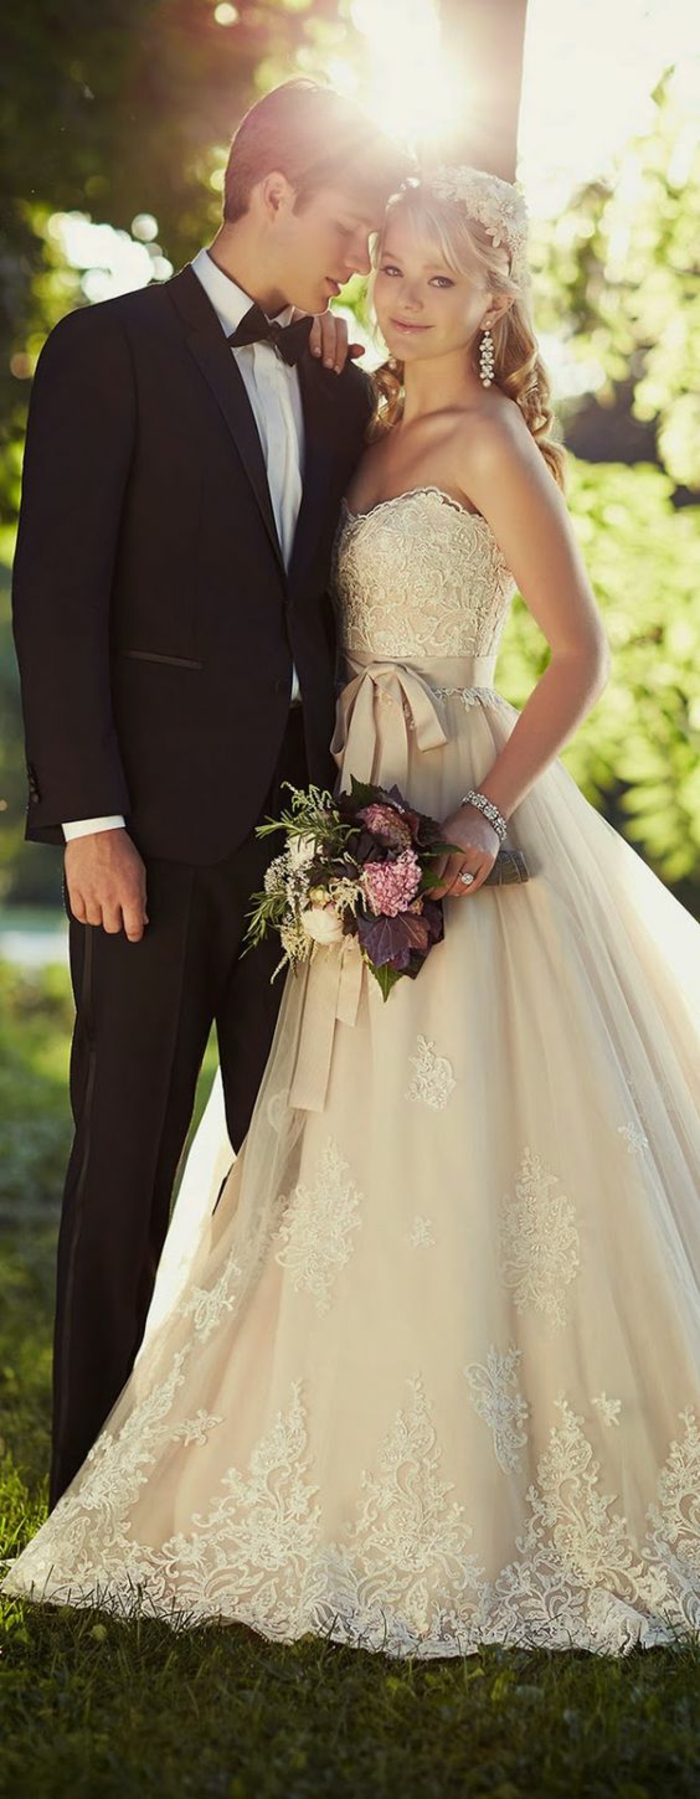 सूट-साथ मक्खी के लिए शादी-पहनने-में प्यार-जोड़ी-दुल्हन और दूल्हे शादी समारोह चुंबन